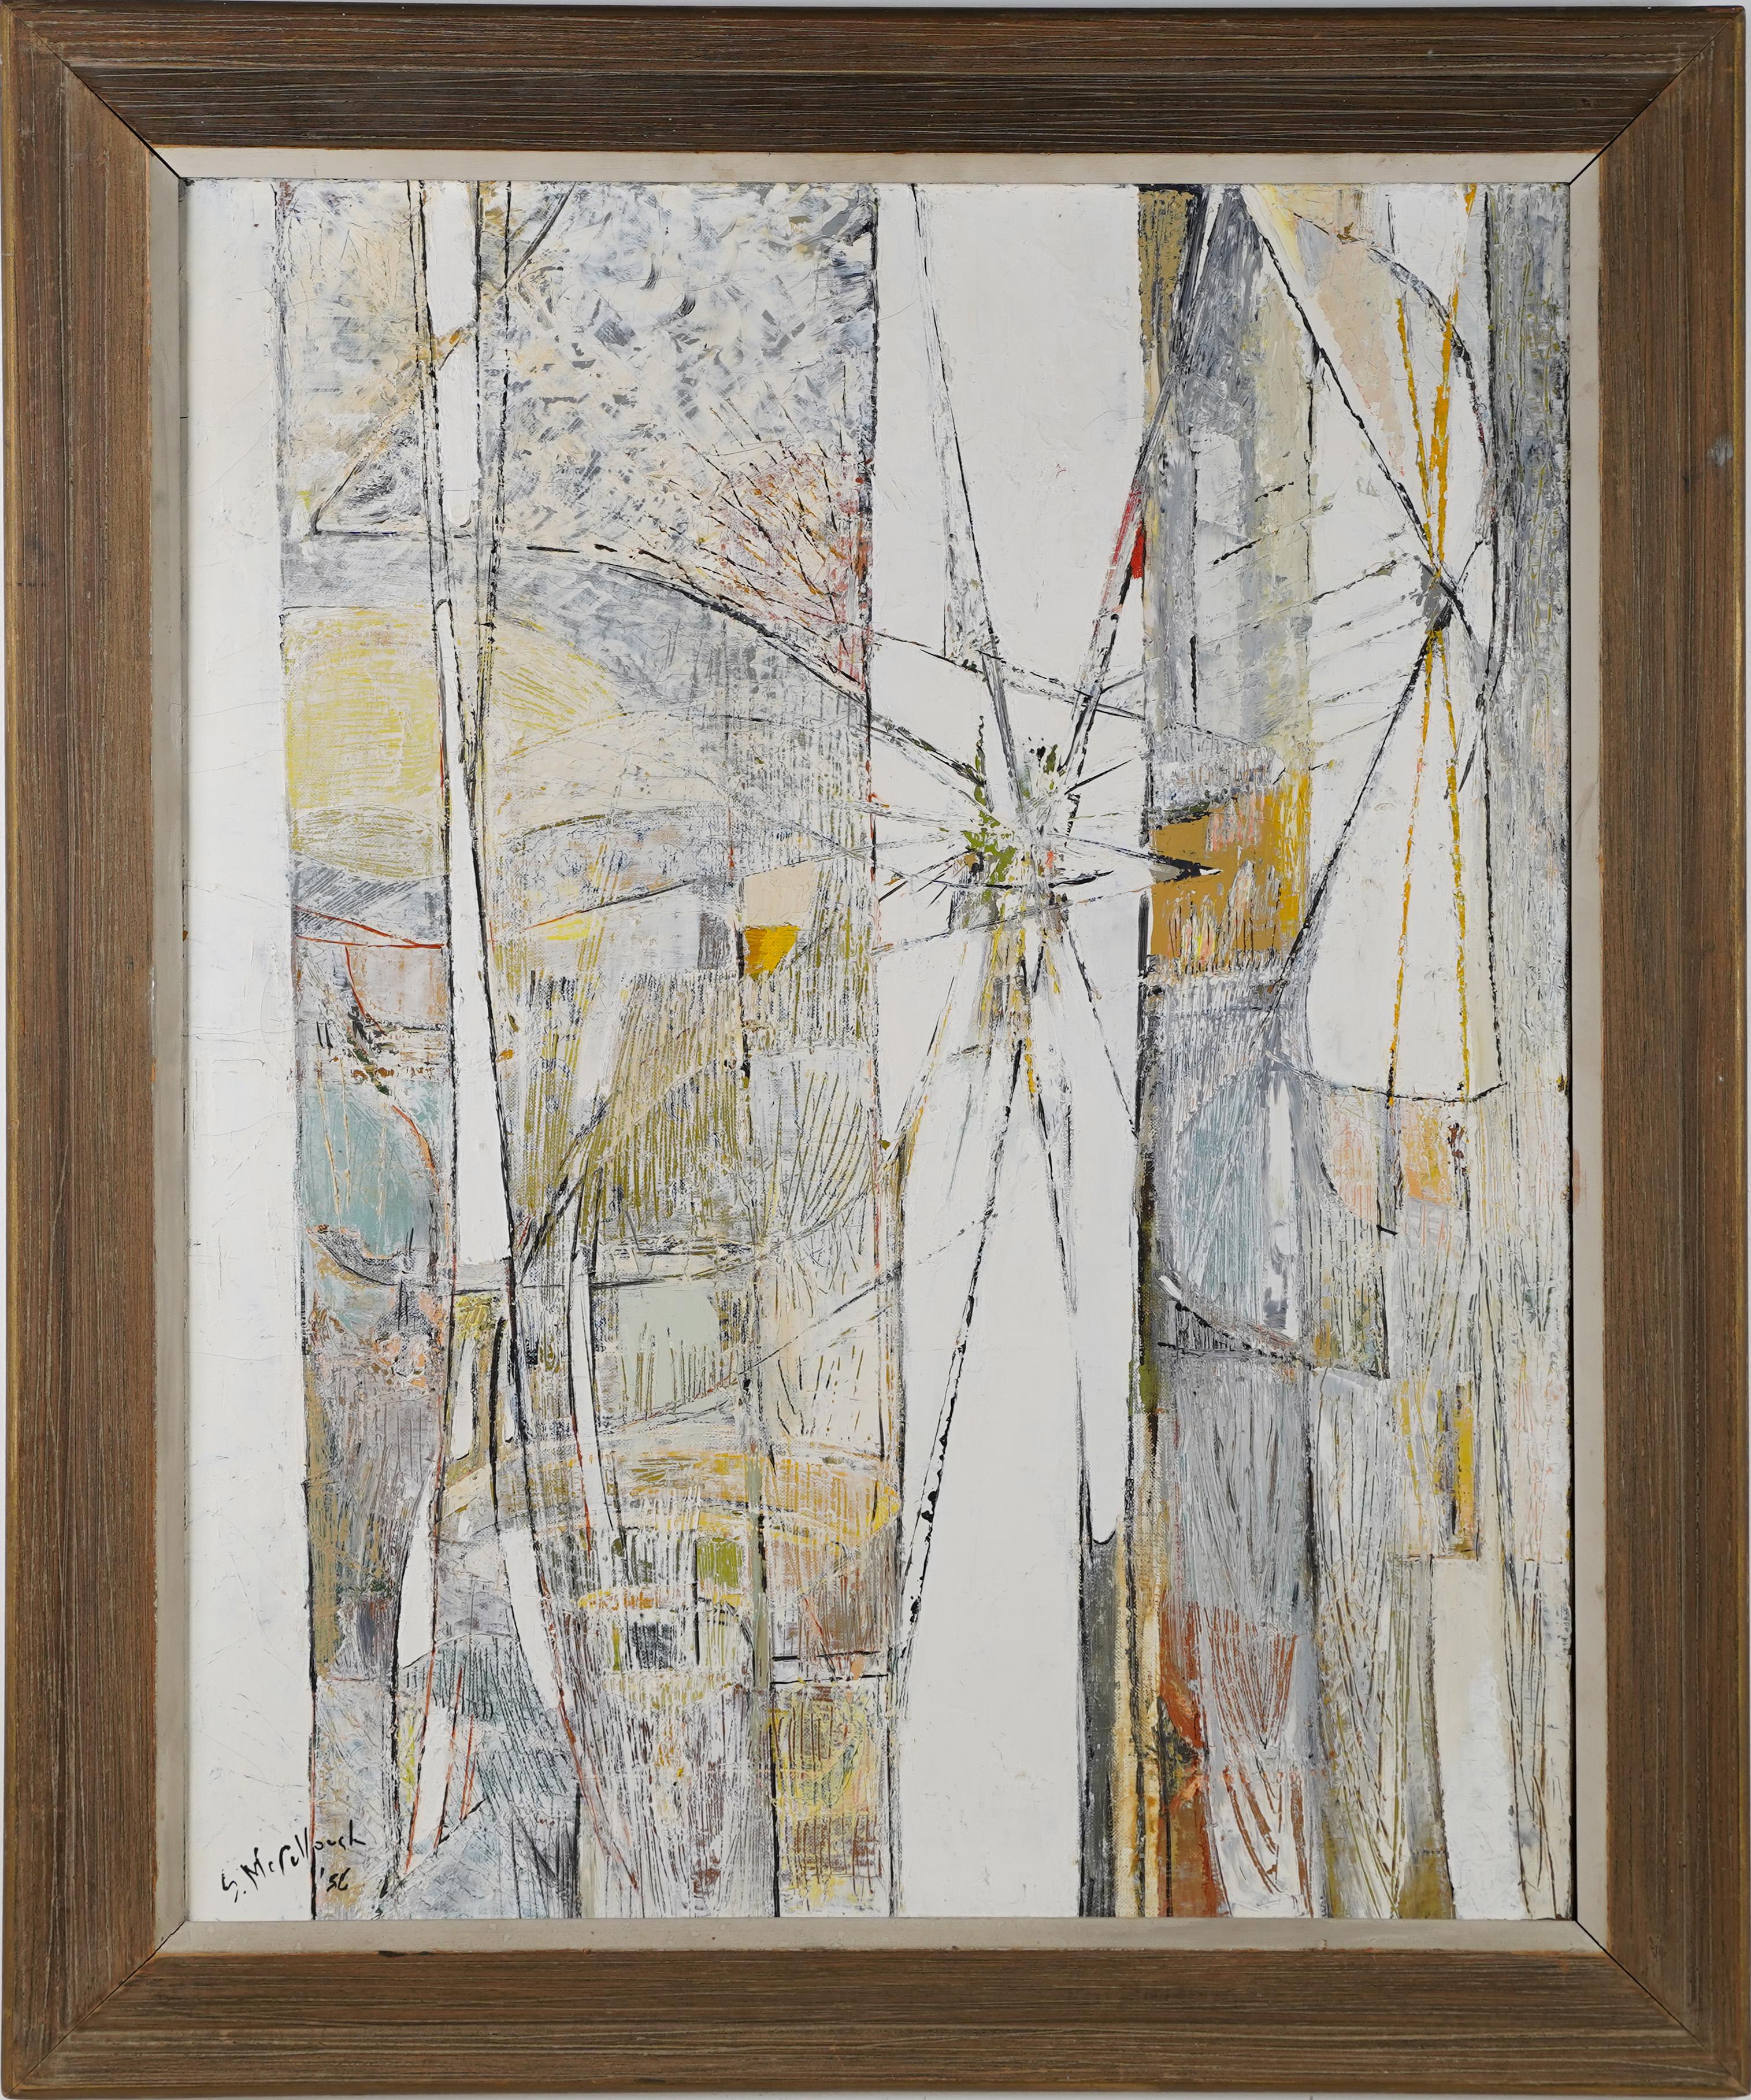 Landscape Painting Suzanne McCullough - Peinture à l'huile ancienne encadrée, expressionniste abstraite moderne du milieu du siècle dernier, signée 